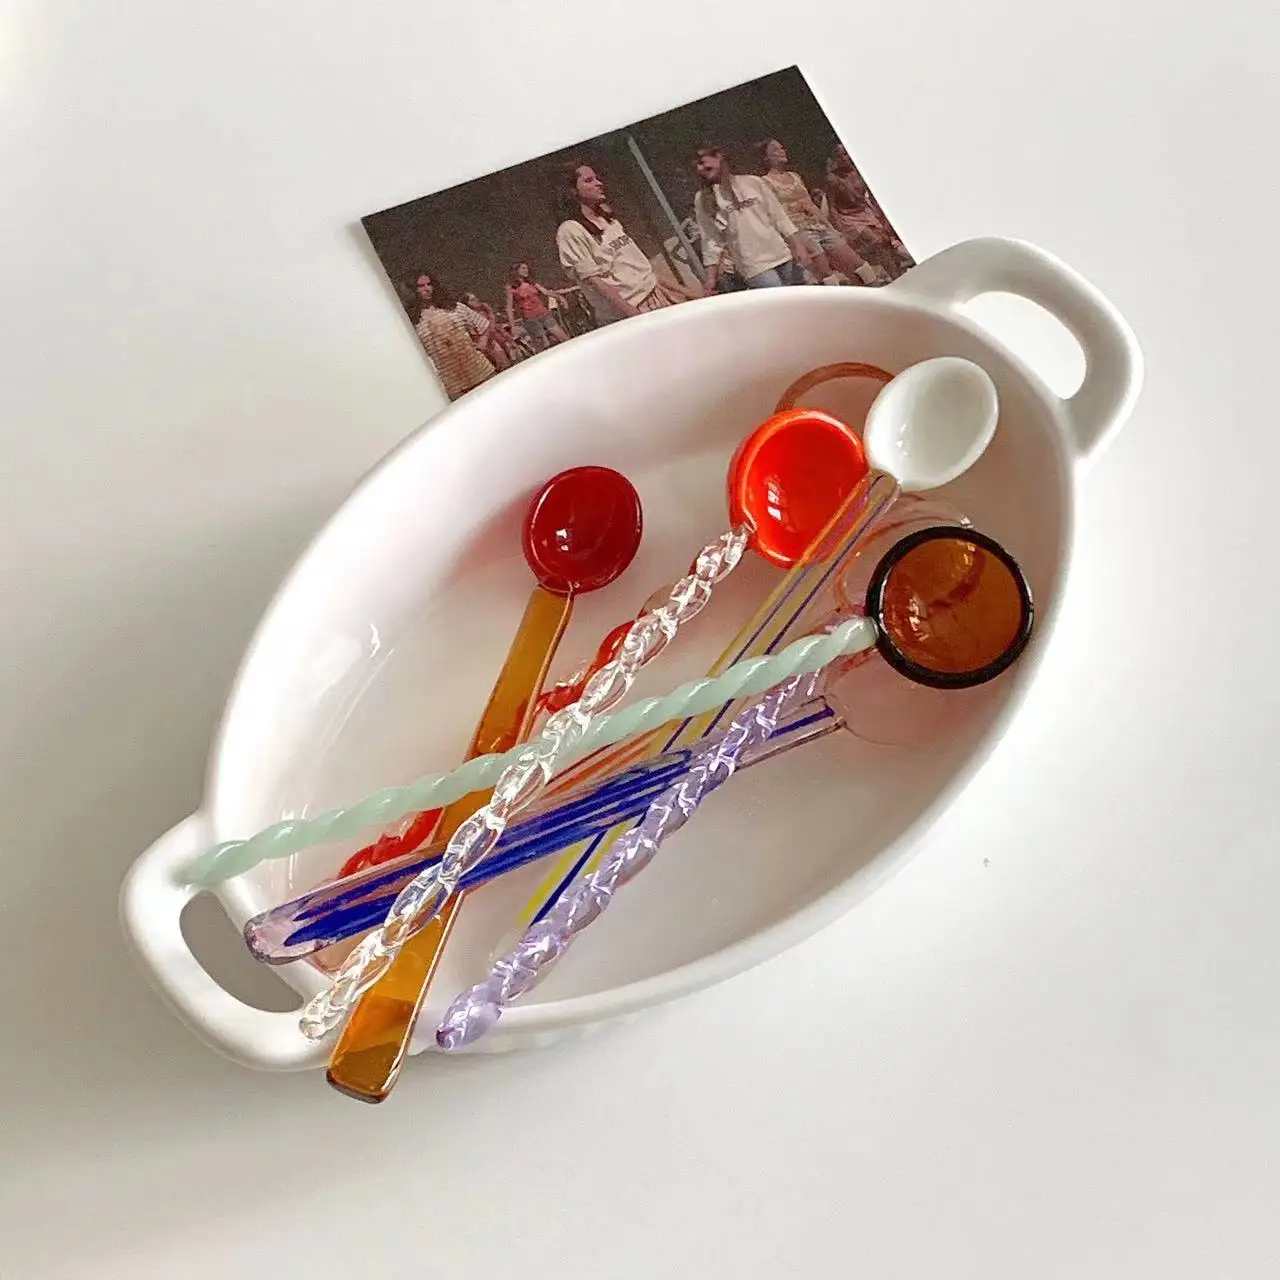 

Корейская Хрустальная витражная спиральная ложка, кофейная ложка, ложка для перемешивания молока, винтажная Хрустальная десертная ложка для конфет, домашние кухонные инструменты